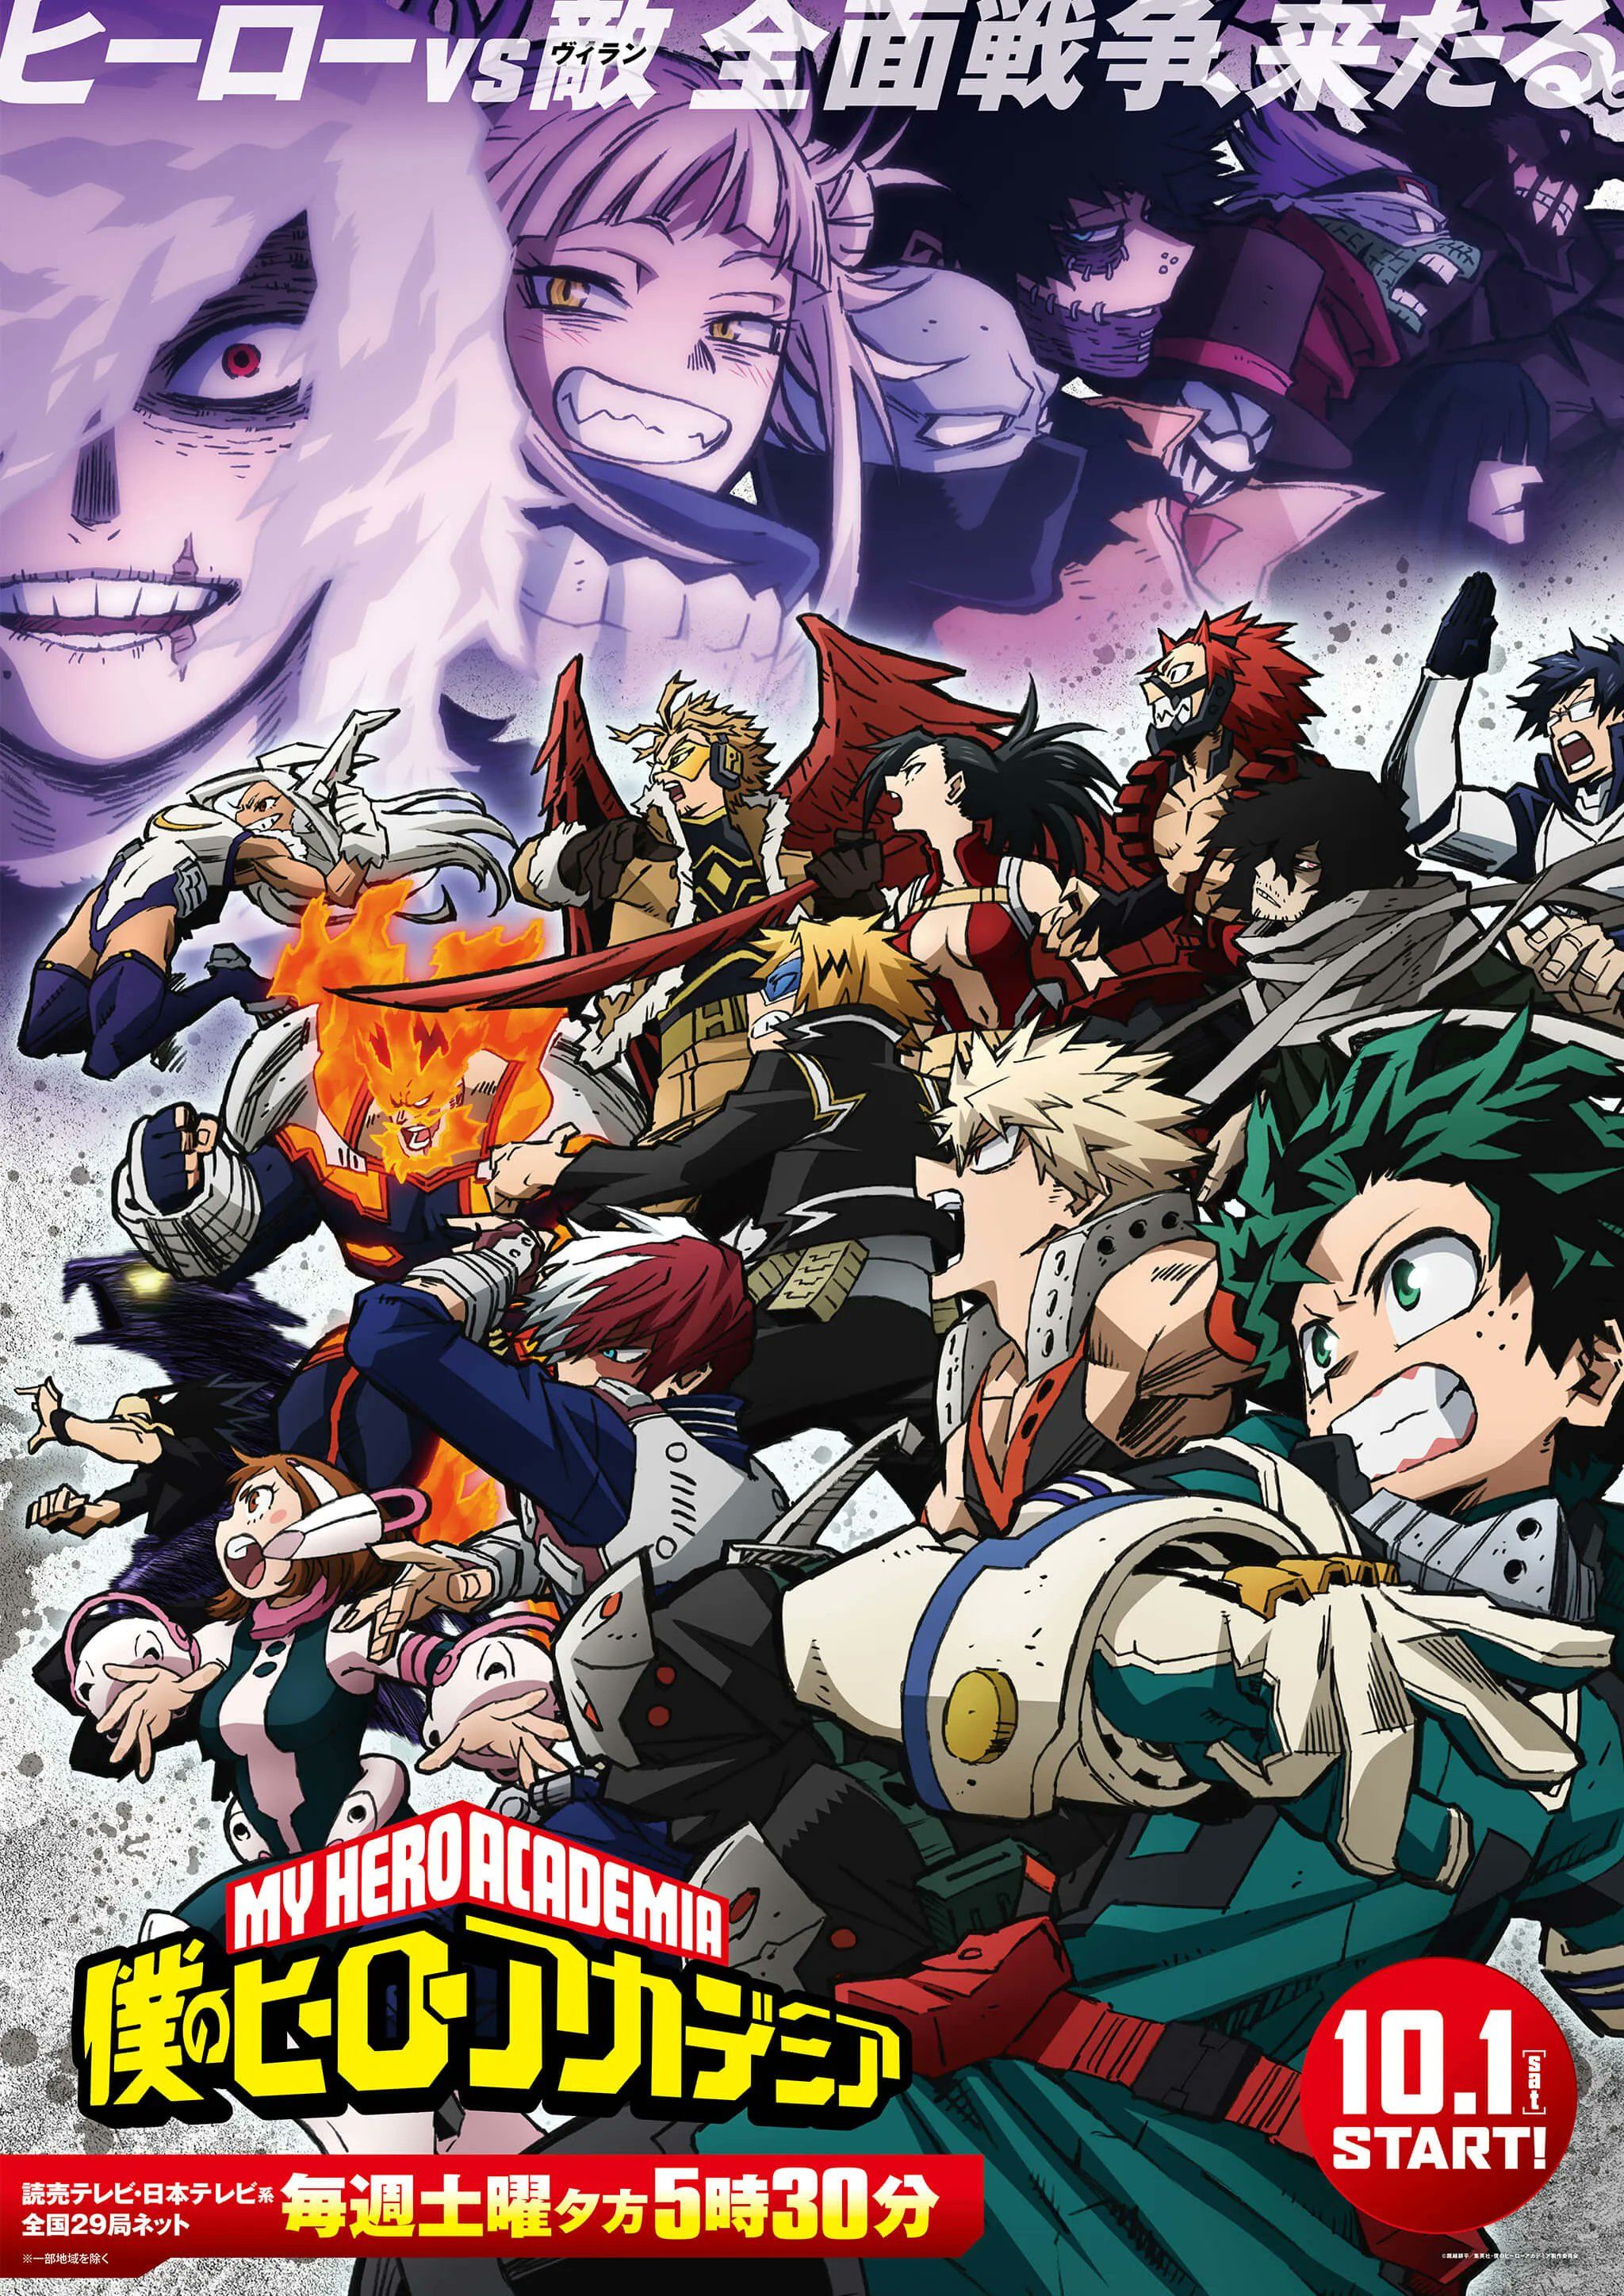 La Clase 2-A entra en batalla con la Liga de Villanos en el póster del anime MHA.